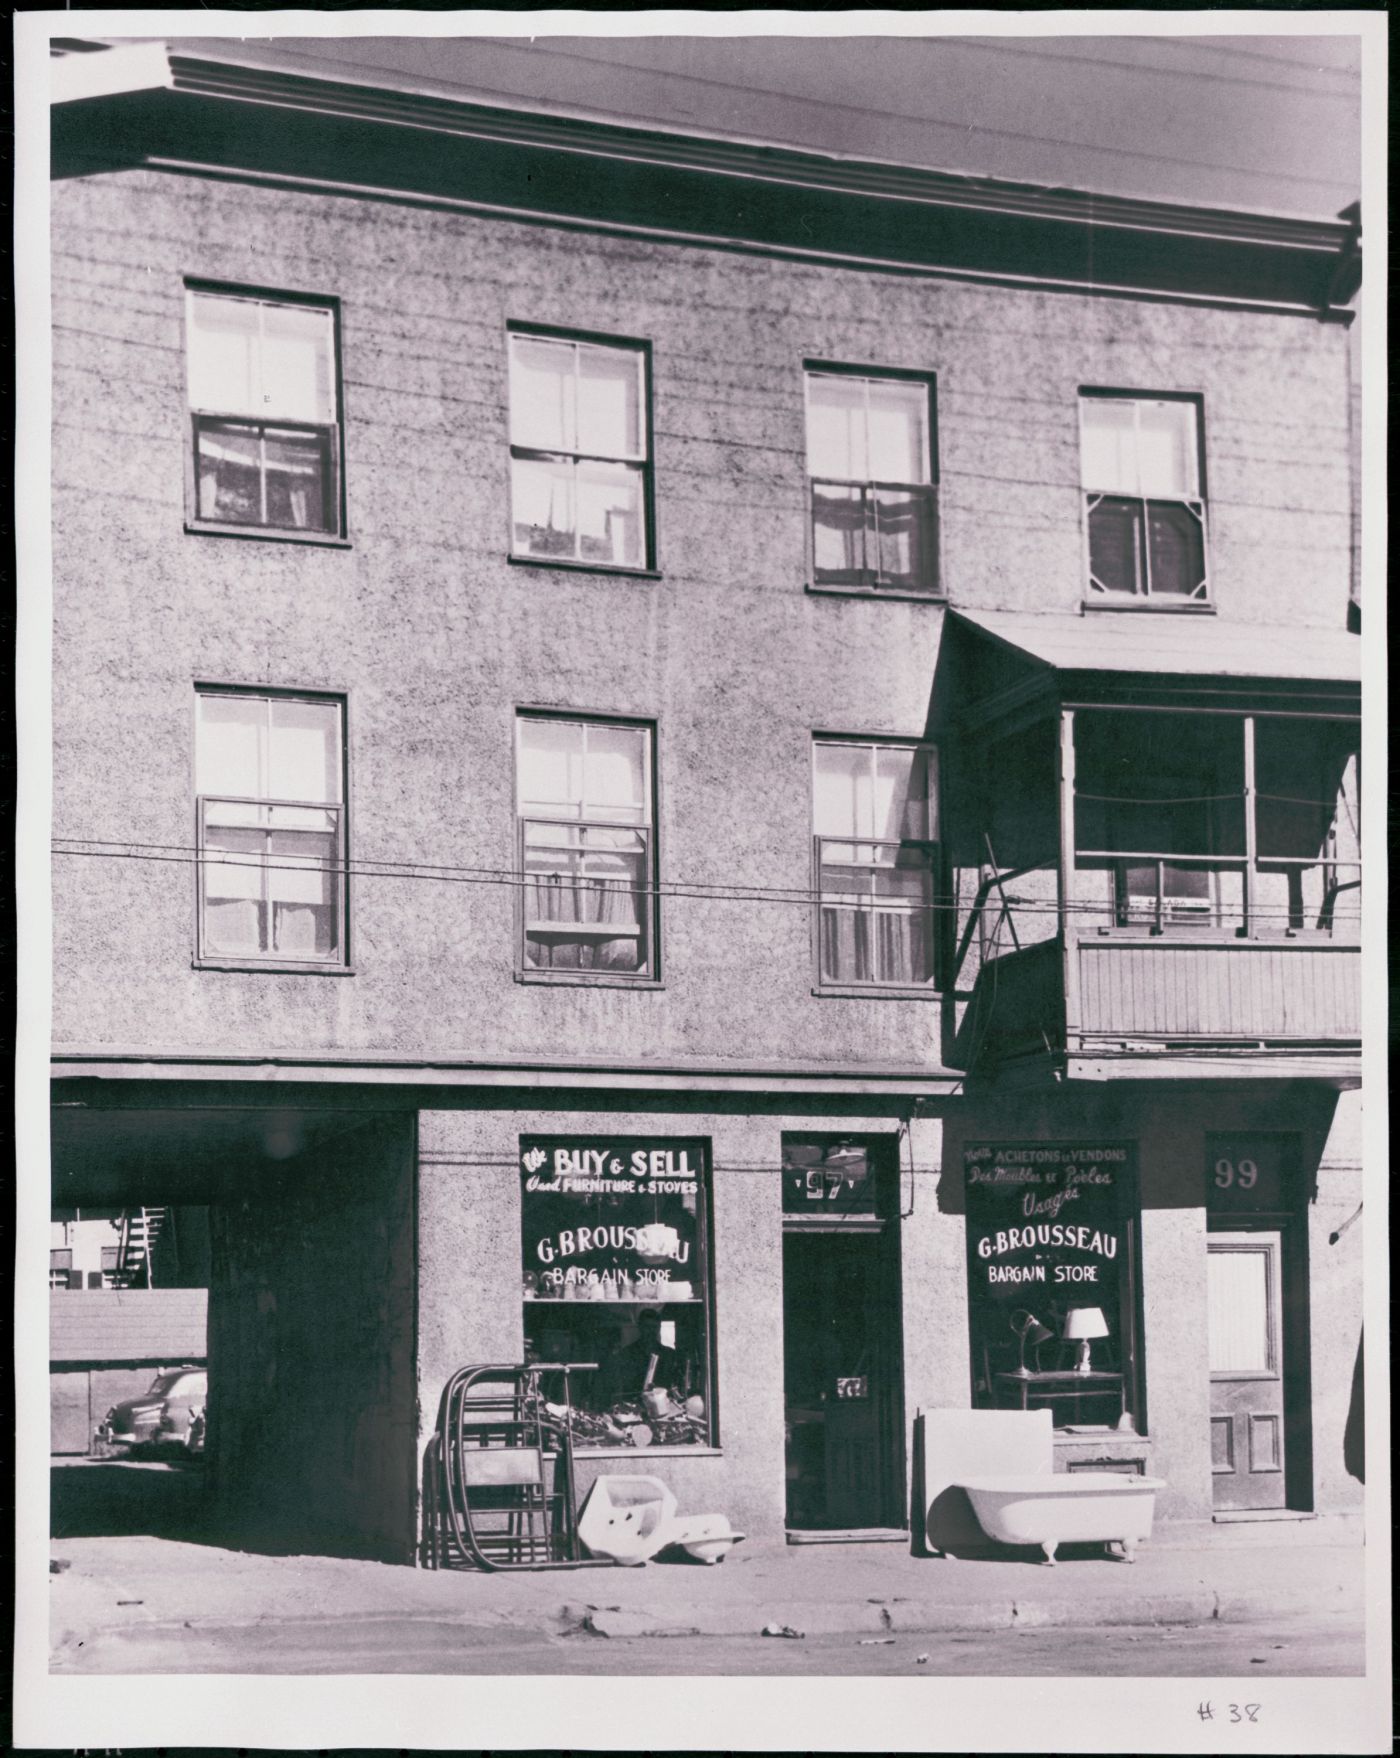 Photographie en noir et blanc d’un édifice à trois étages en stuc, avec un balcon au premier étage. Au rez-de-chaussée, un magasin d’objets usagés avec affichage bilingue à la devanture. Un passage permet d’accéder au stationnement à l’arrière de l’édifice.